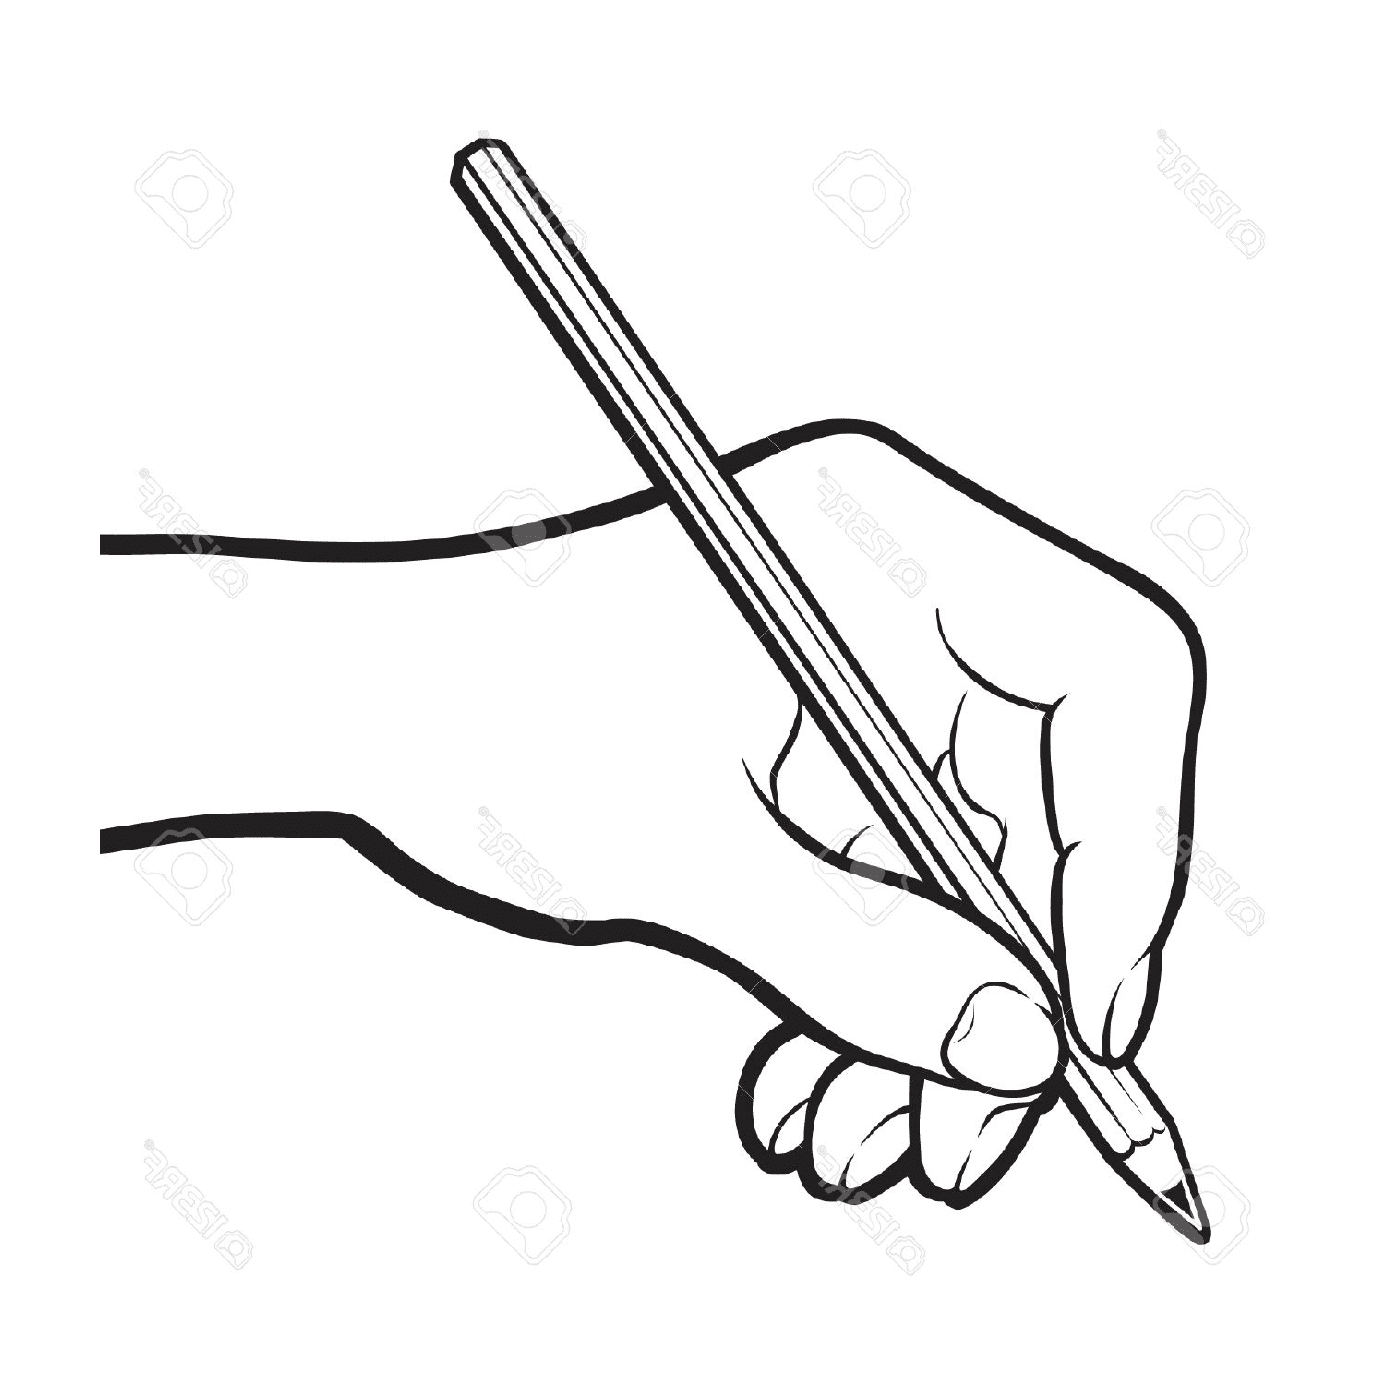  Handhaltender Bleistift-Zeichnung 